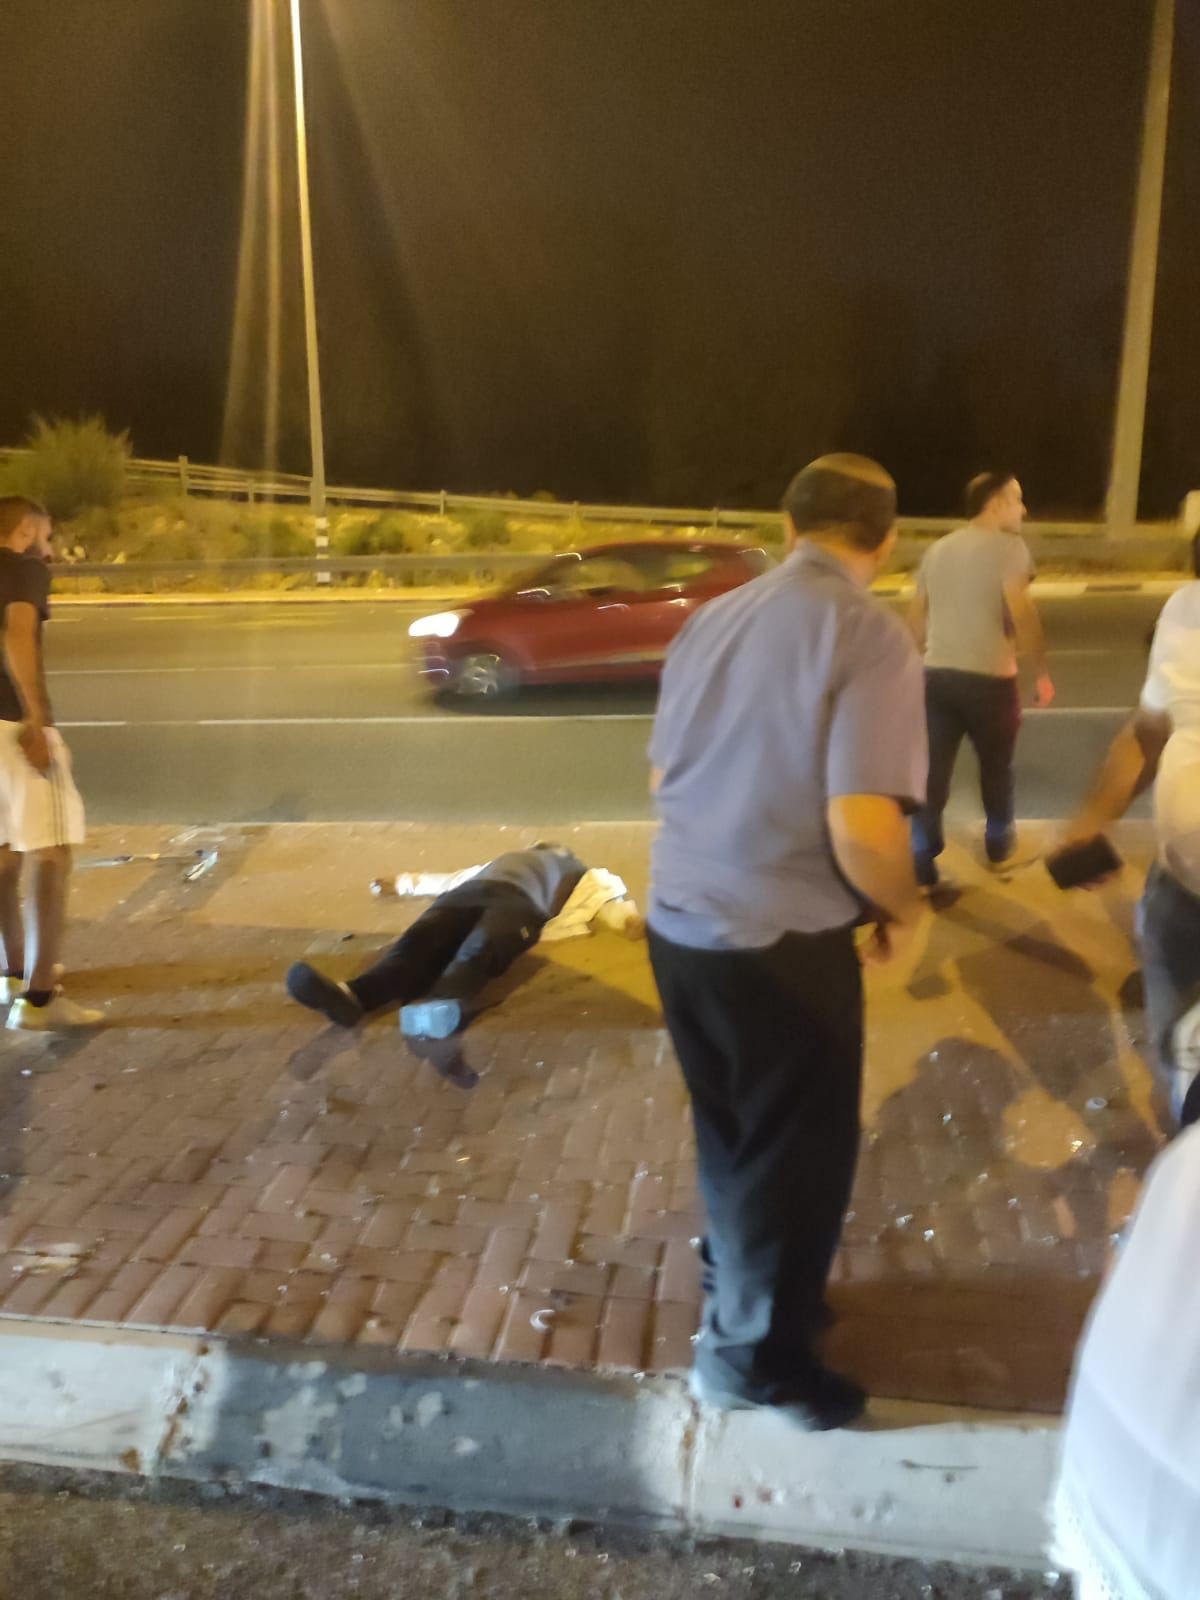 شب گذشته اتفاق افتاد:

مجروحیت 8 شهرک نشین در عملیات حمله با چاقو در رام الله